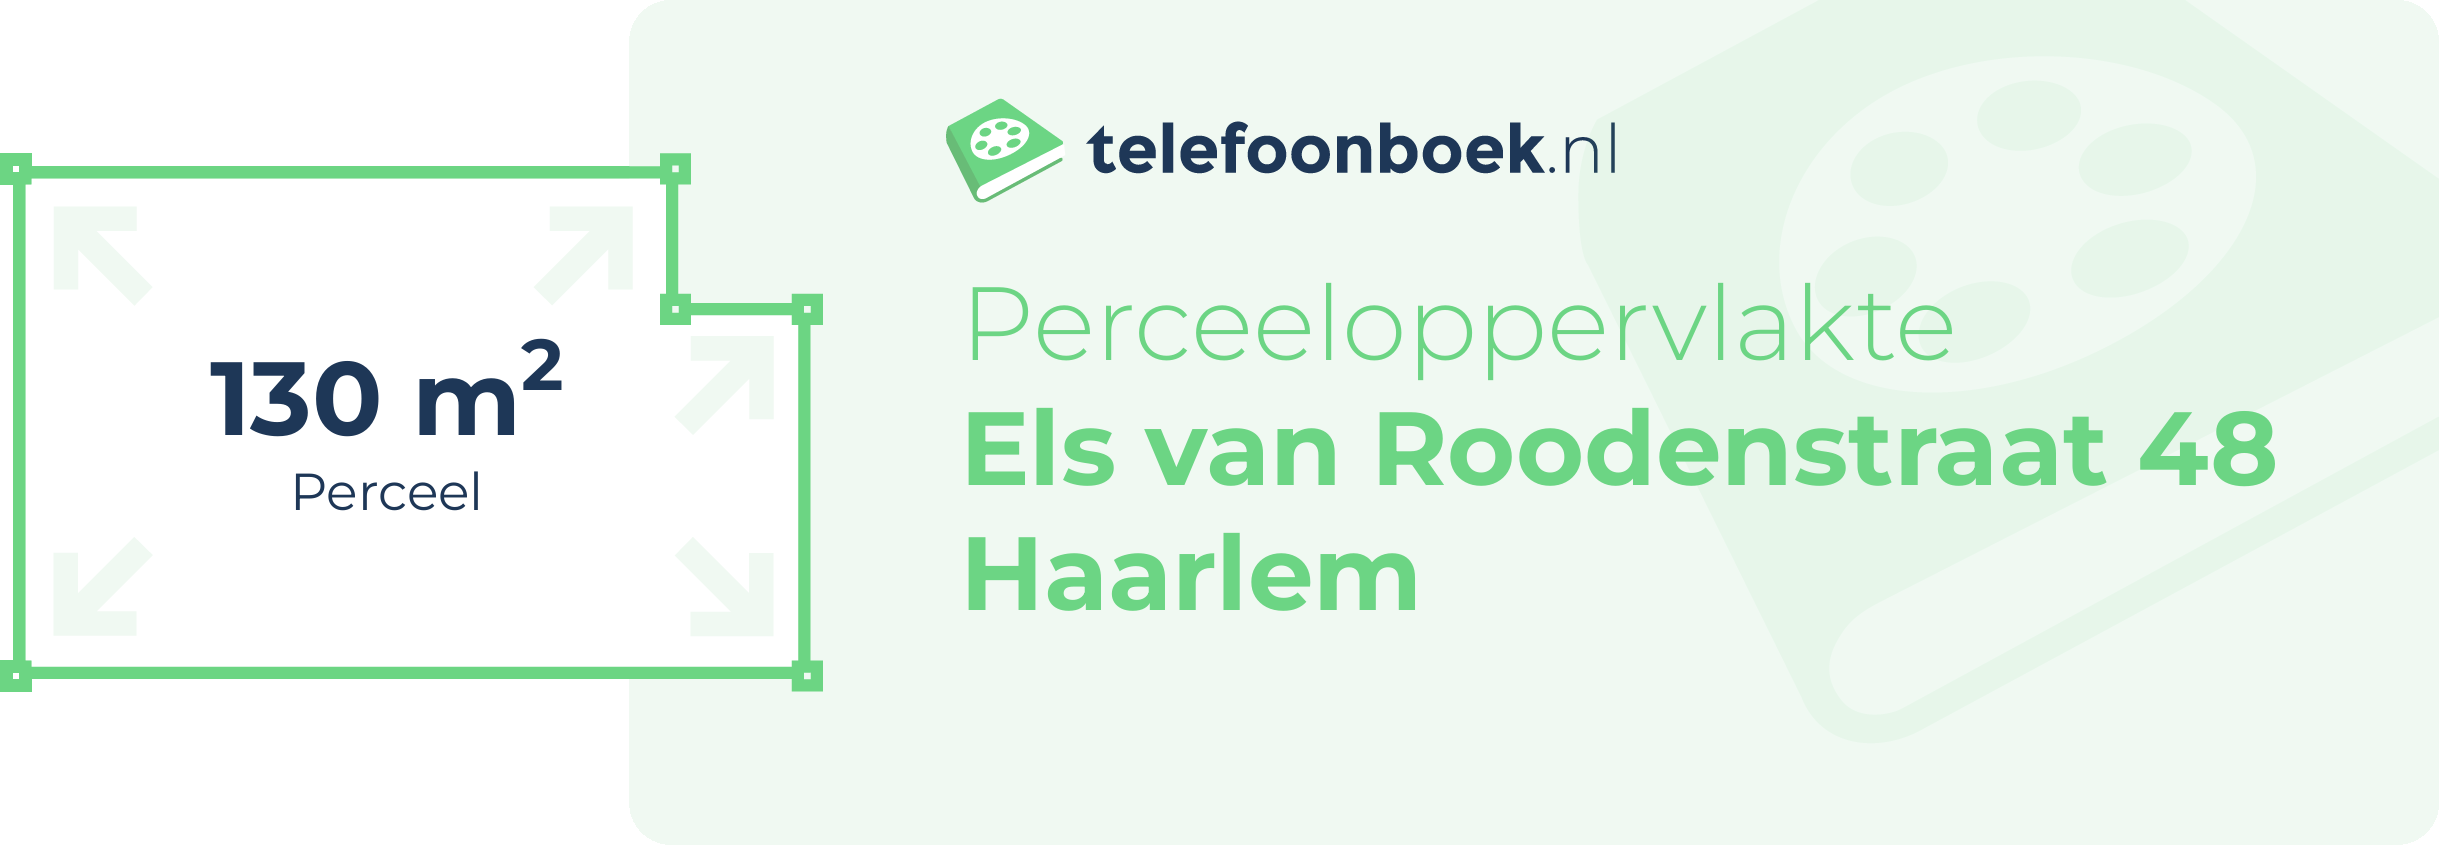 Perceeloppervlakte Els Van Roodenstraat 48 Haarlem